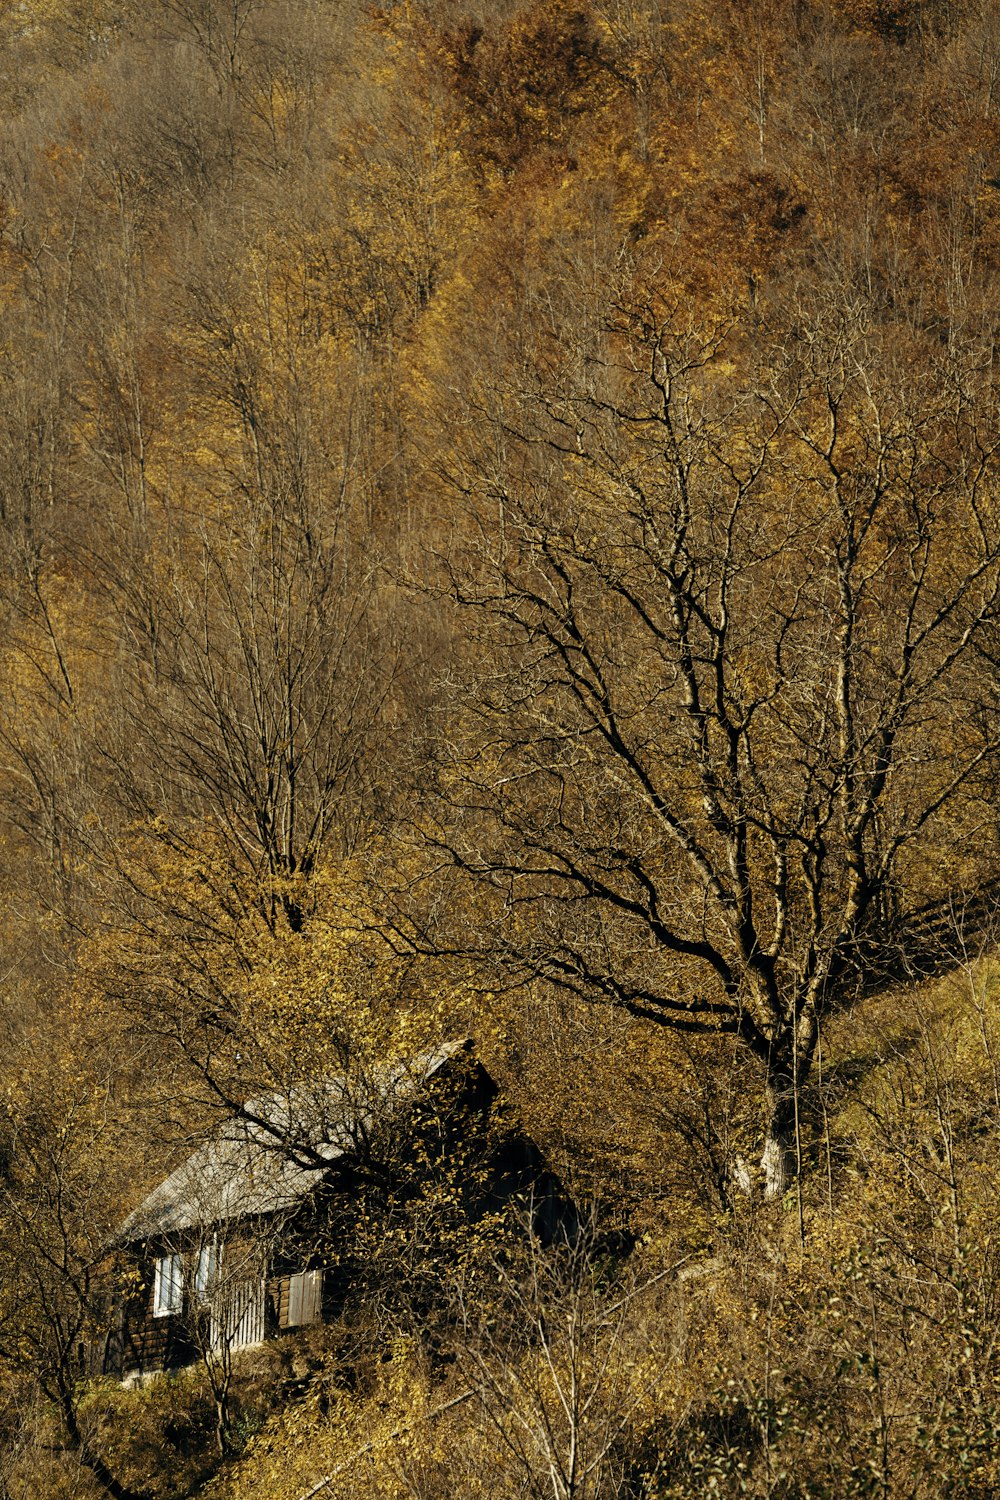 Hütte in der Nähe von hohen Bäumen